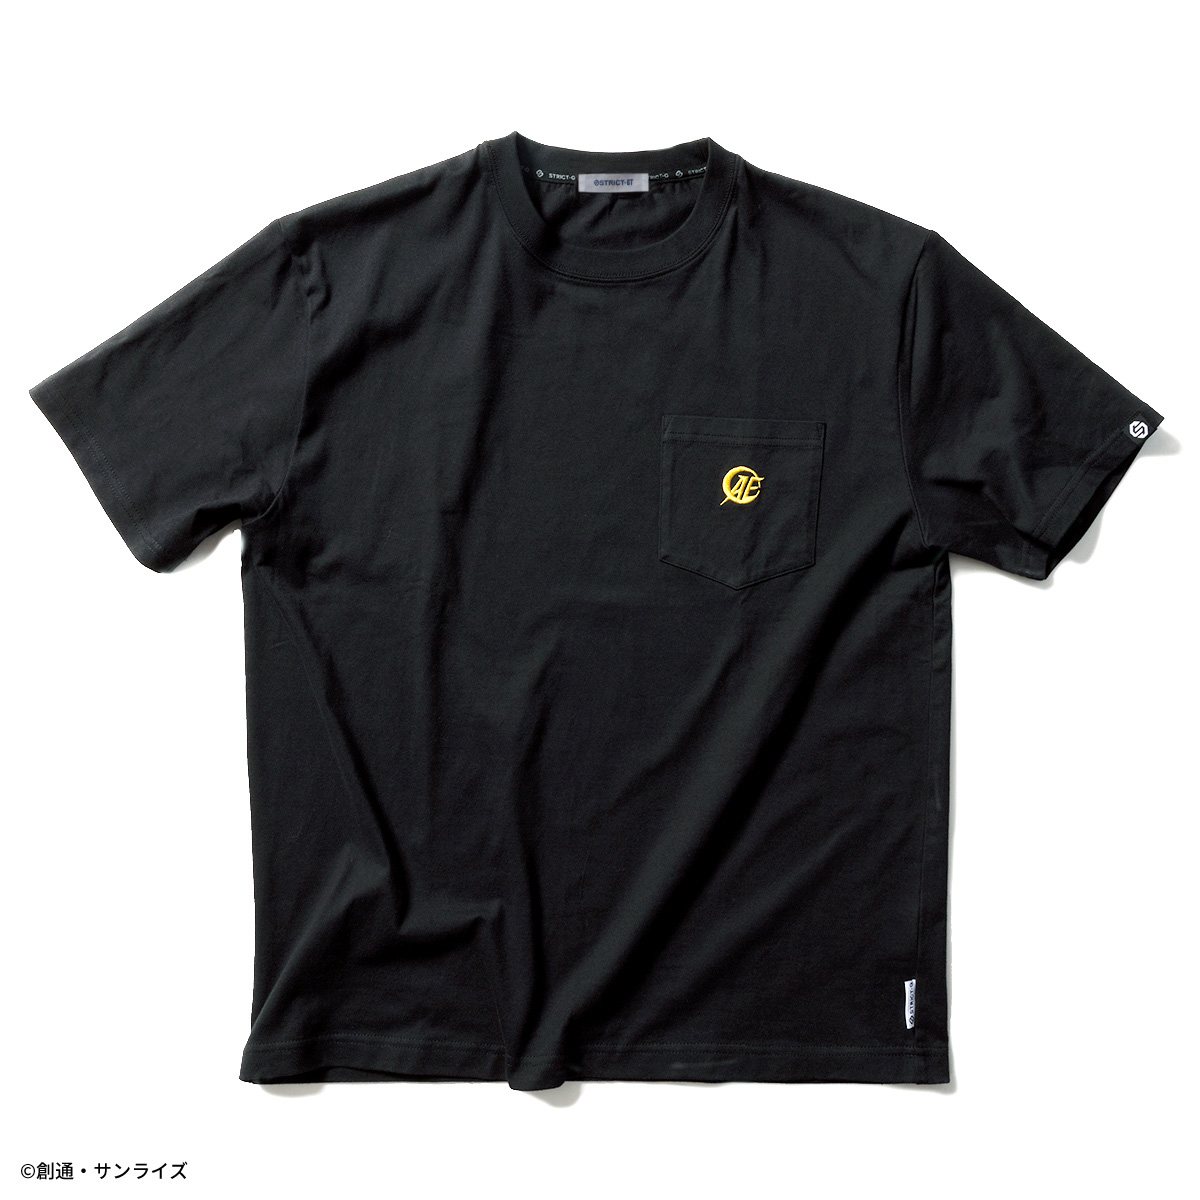 STRICT-G『機動戦士ガンダムUC』ポケット付き半袖Tシャツ アナハイムエレクトロニクスモデル